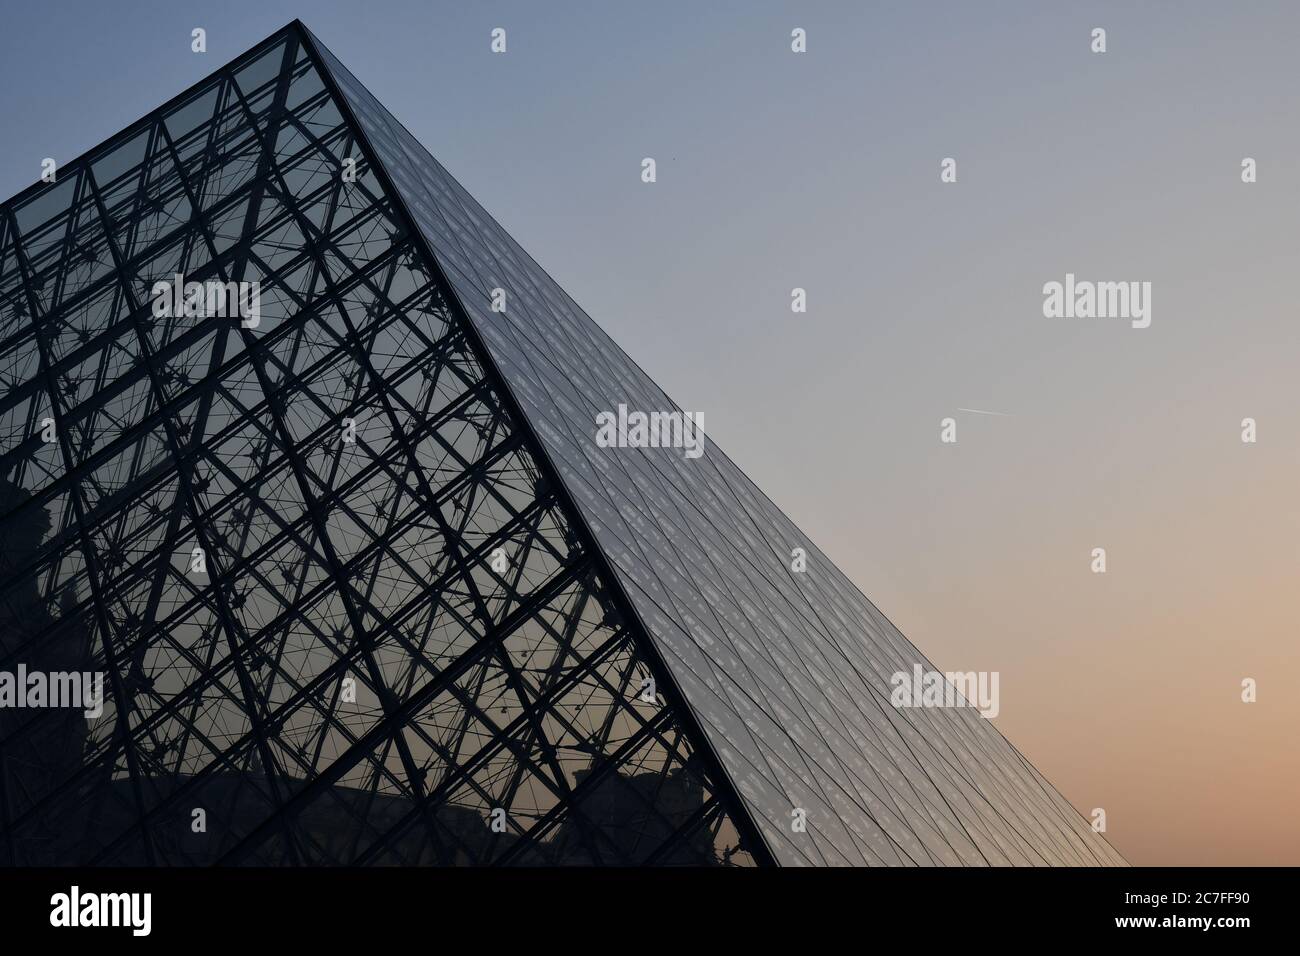 Pyramidenförmige Glaskuppel vor klarem Himmel bei Sonnenuntergang. Futuristische transparente Glas Dachkonstruktion von Dreieck geometrische Form Stockfoto